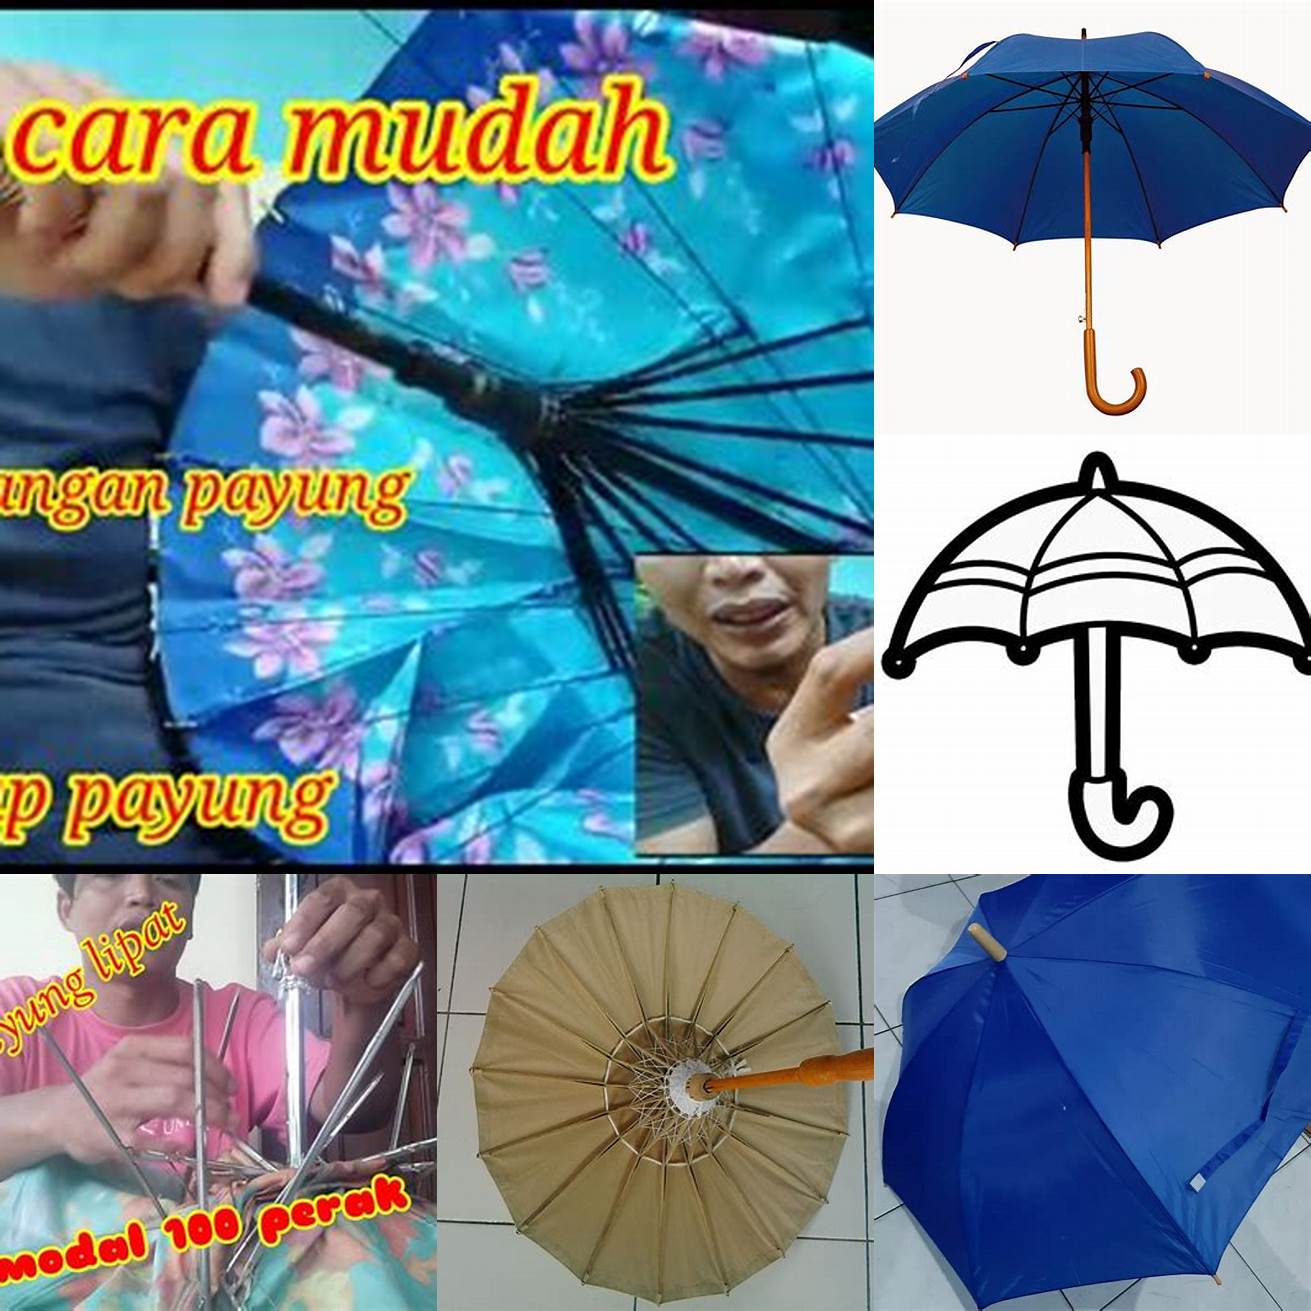 Pegangan payung